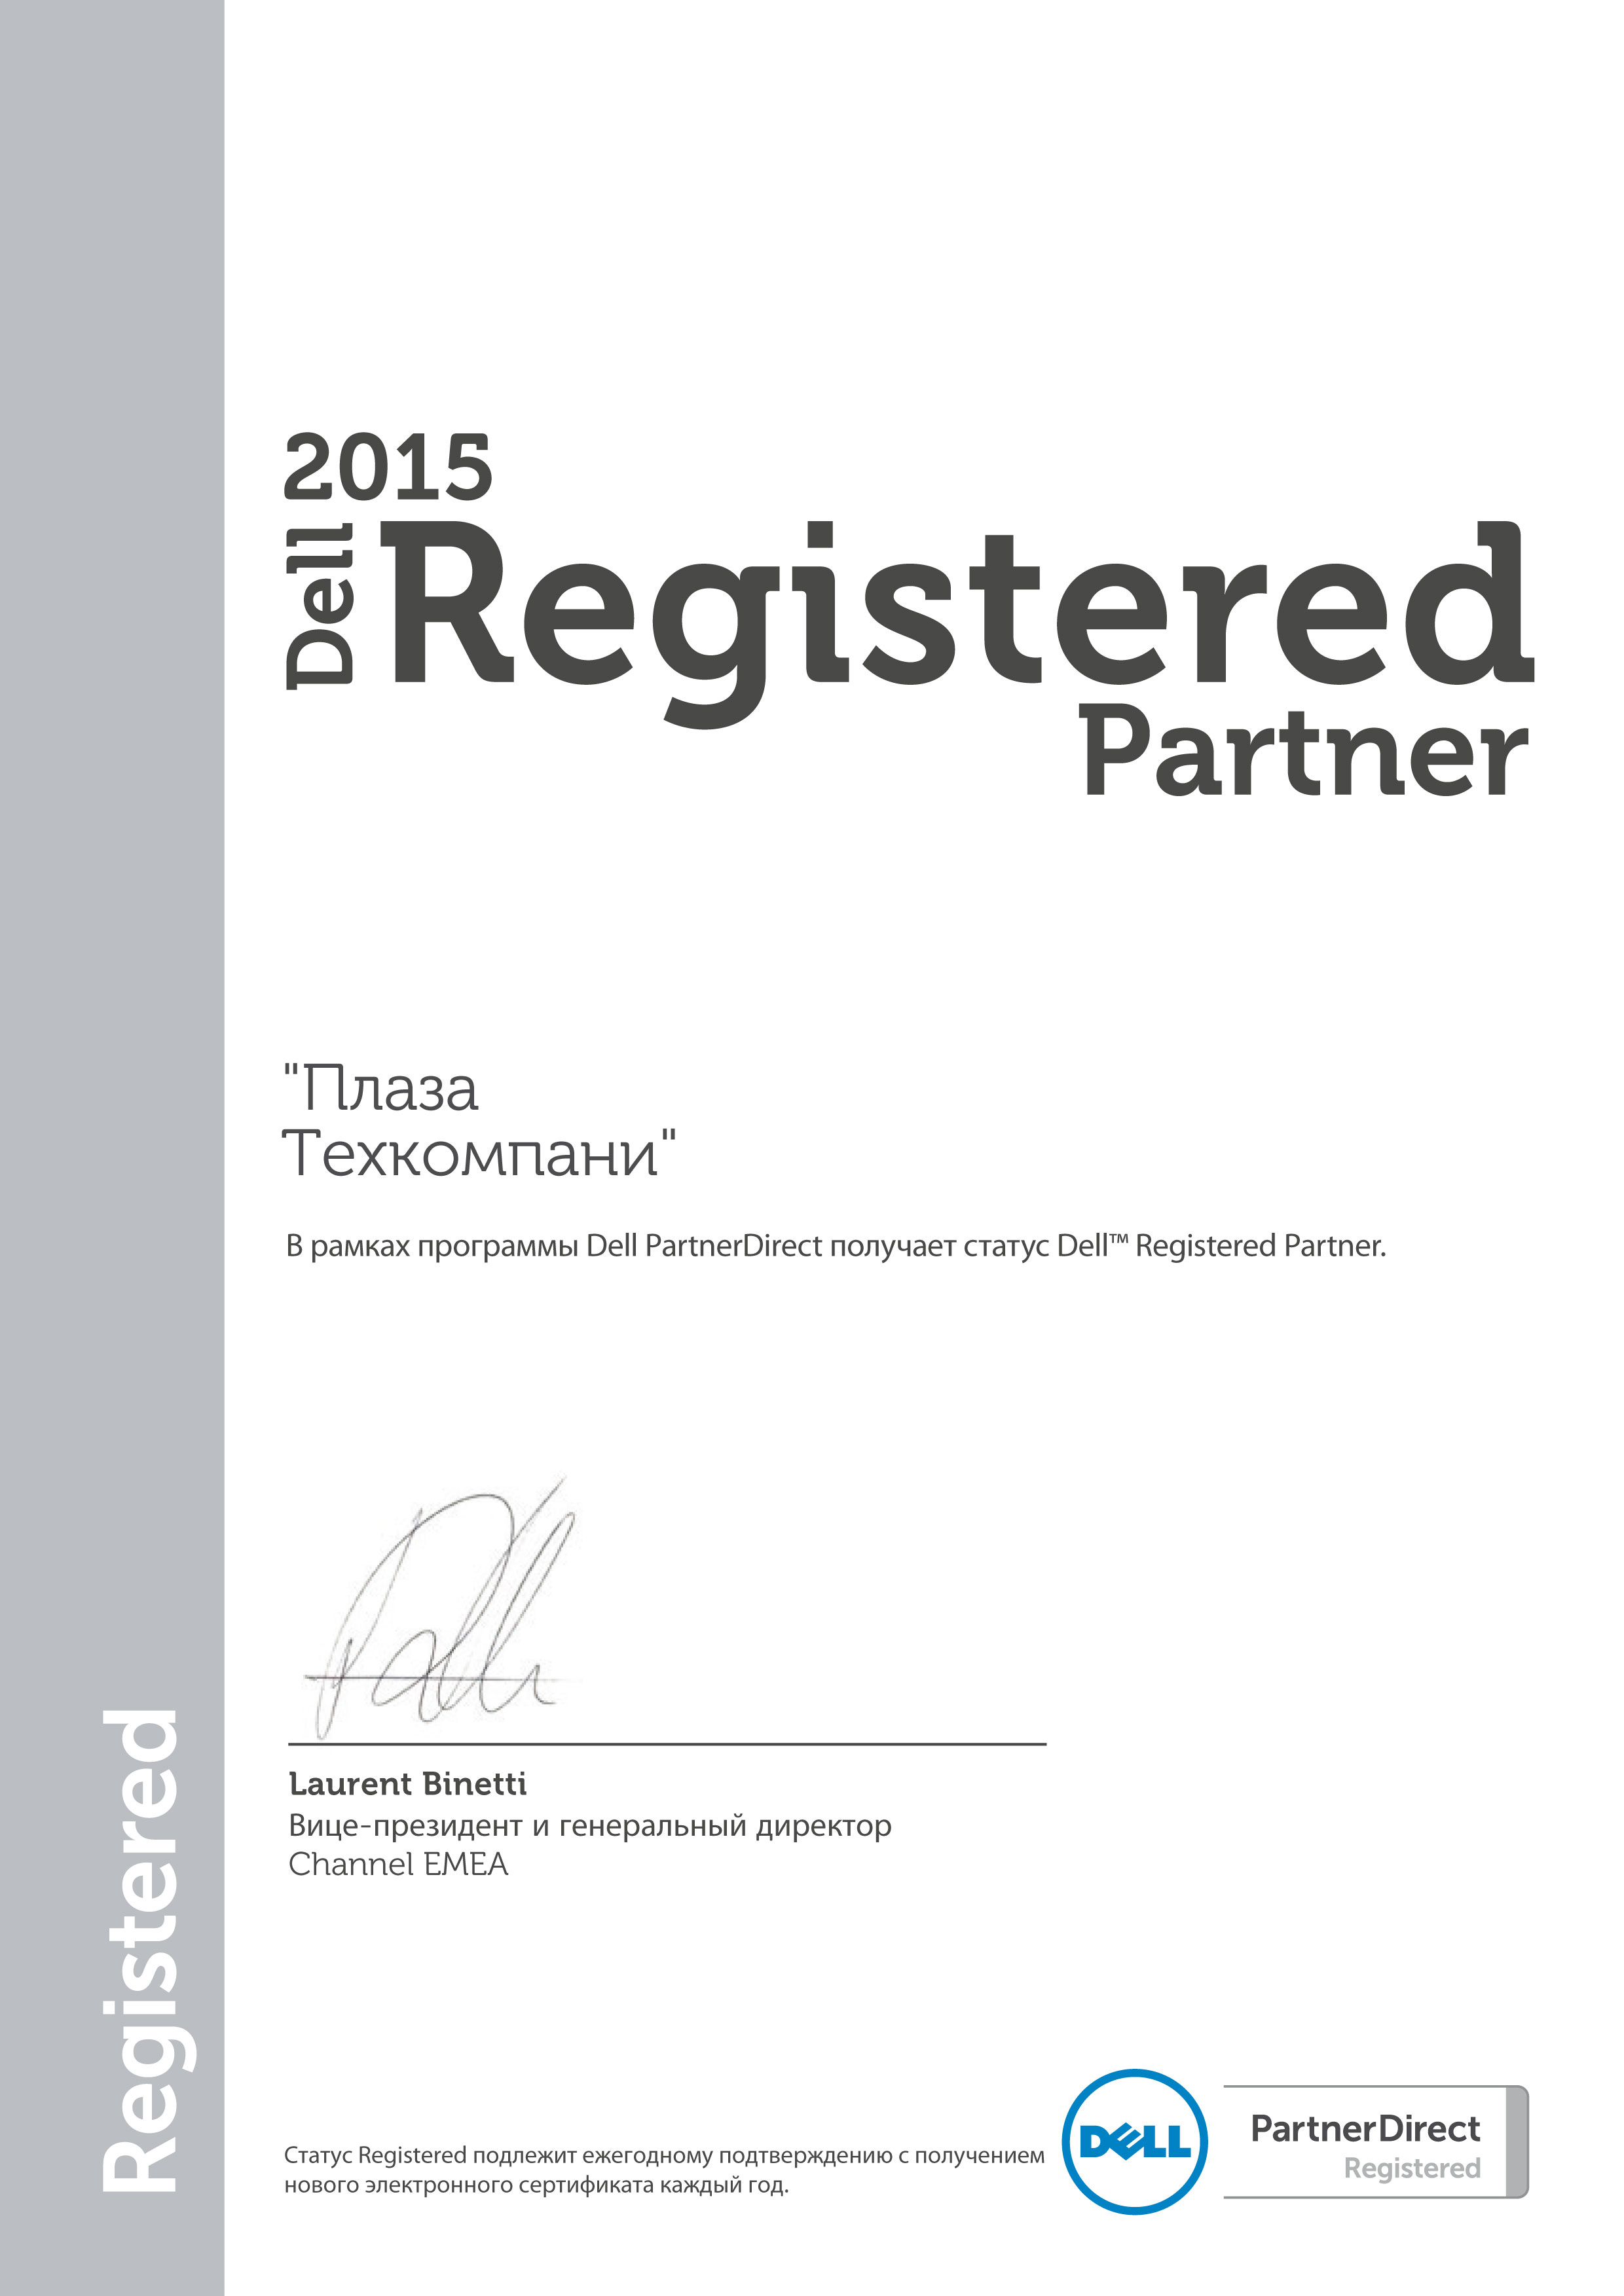 Поставщик ит | ИТ поставщики Dell Partner Registered 2010 2011 2012 2013 2014 2015 2016 2017 сертификат поставщика  делл